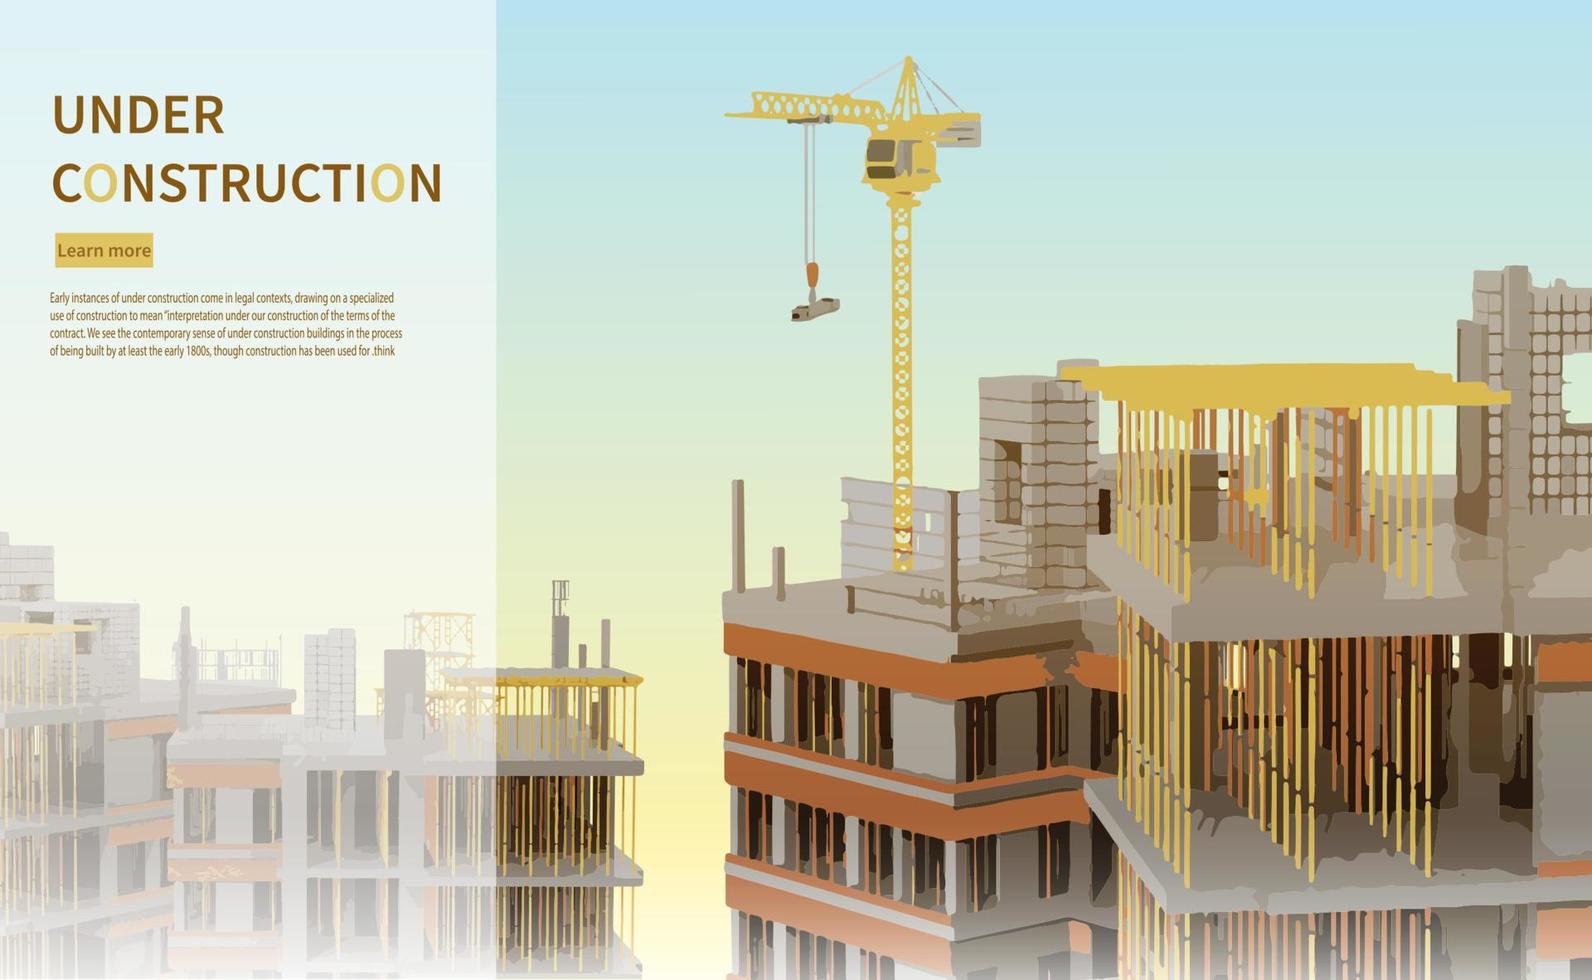 chantier de construction avec une tour crane.vector illustration vecteur